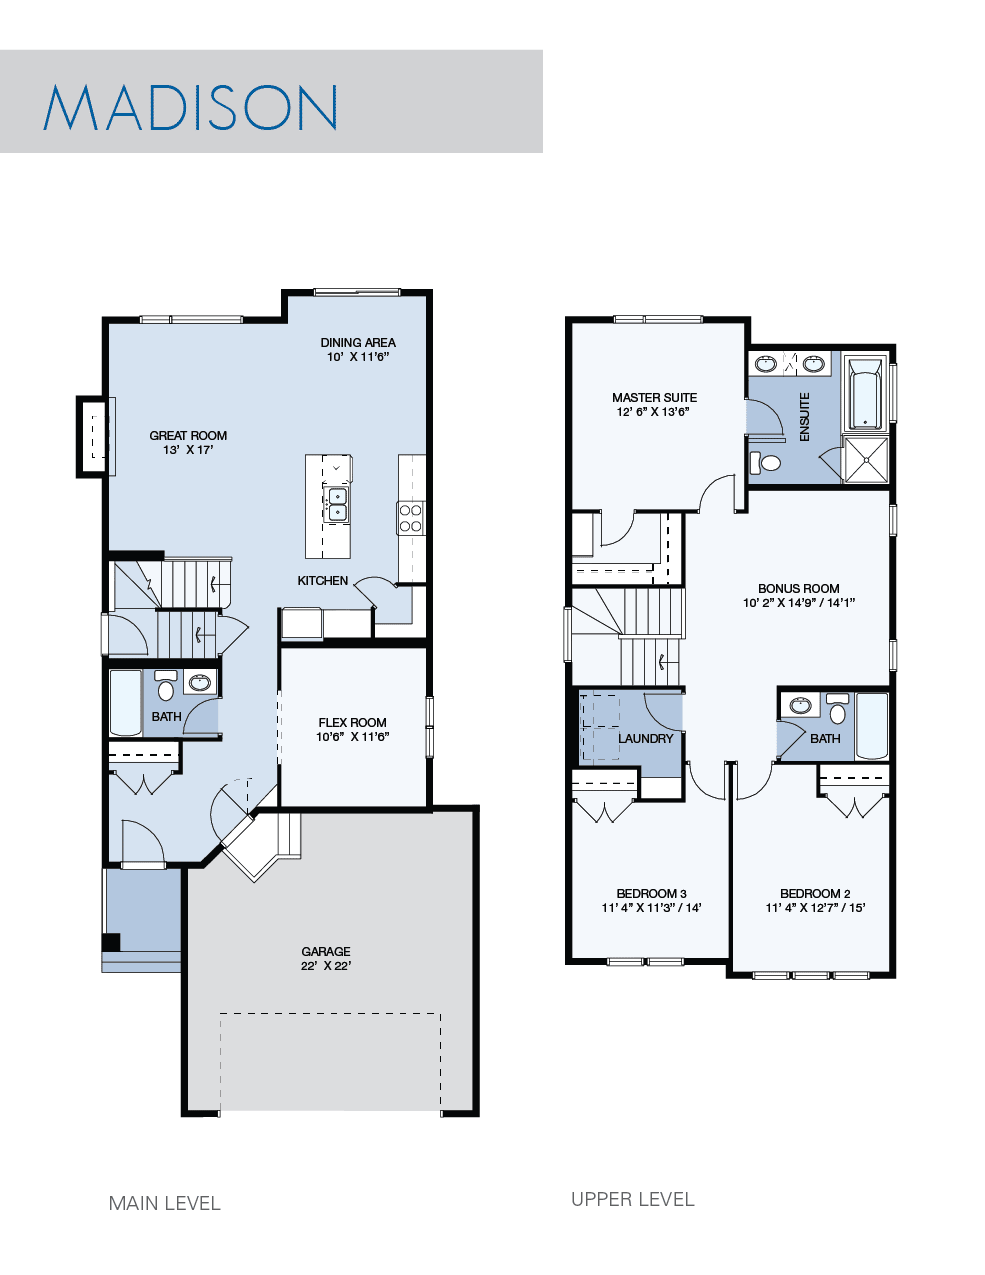 Madison floorplan